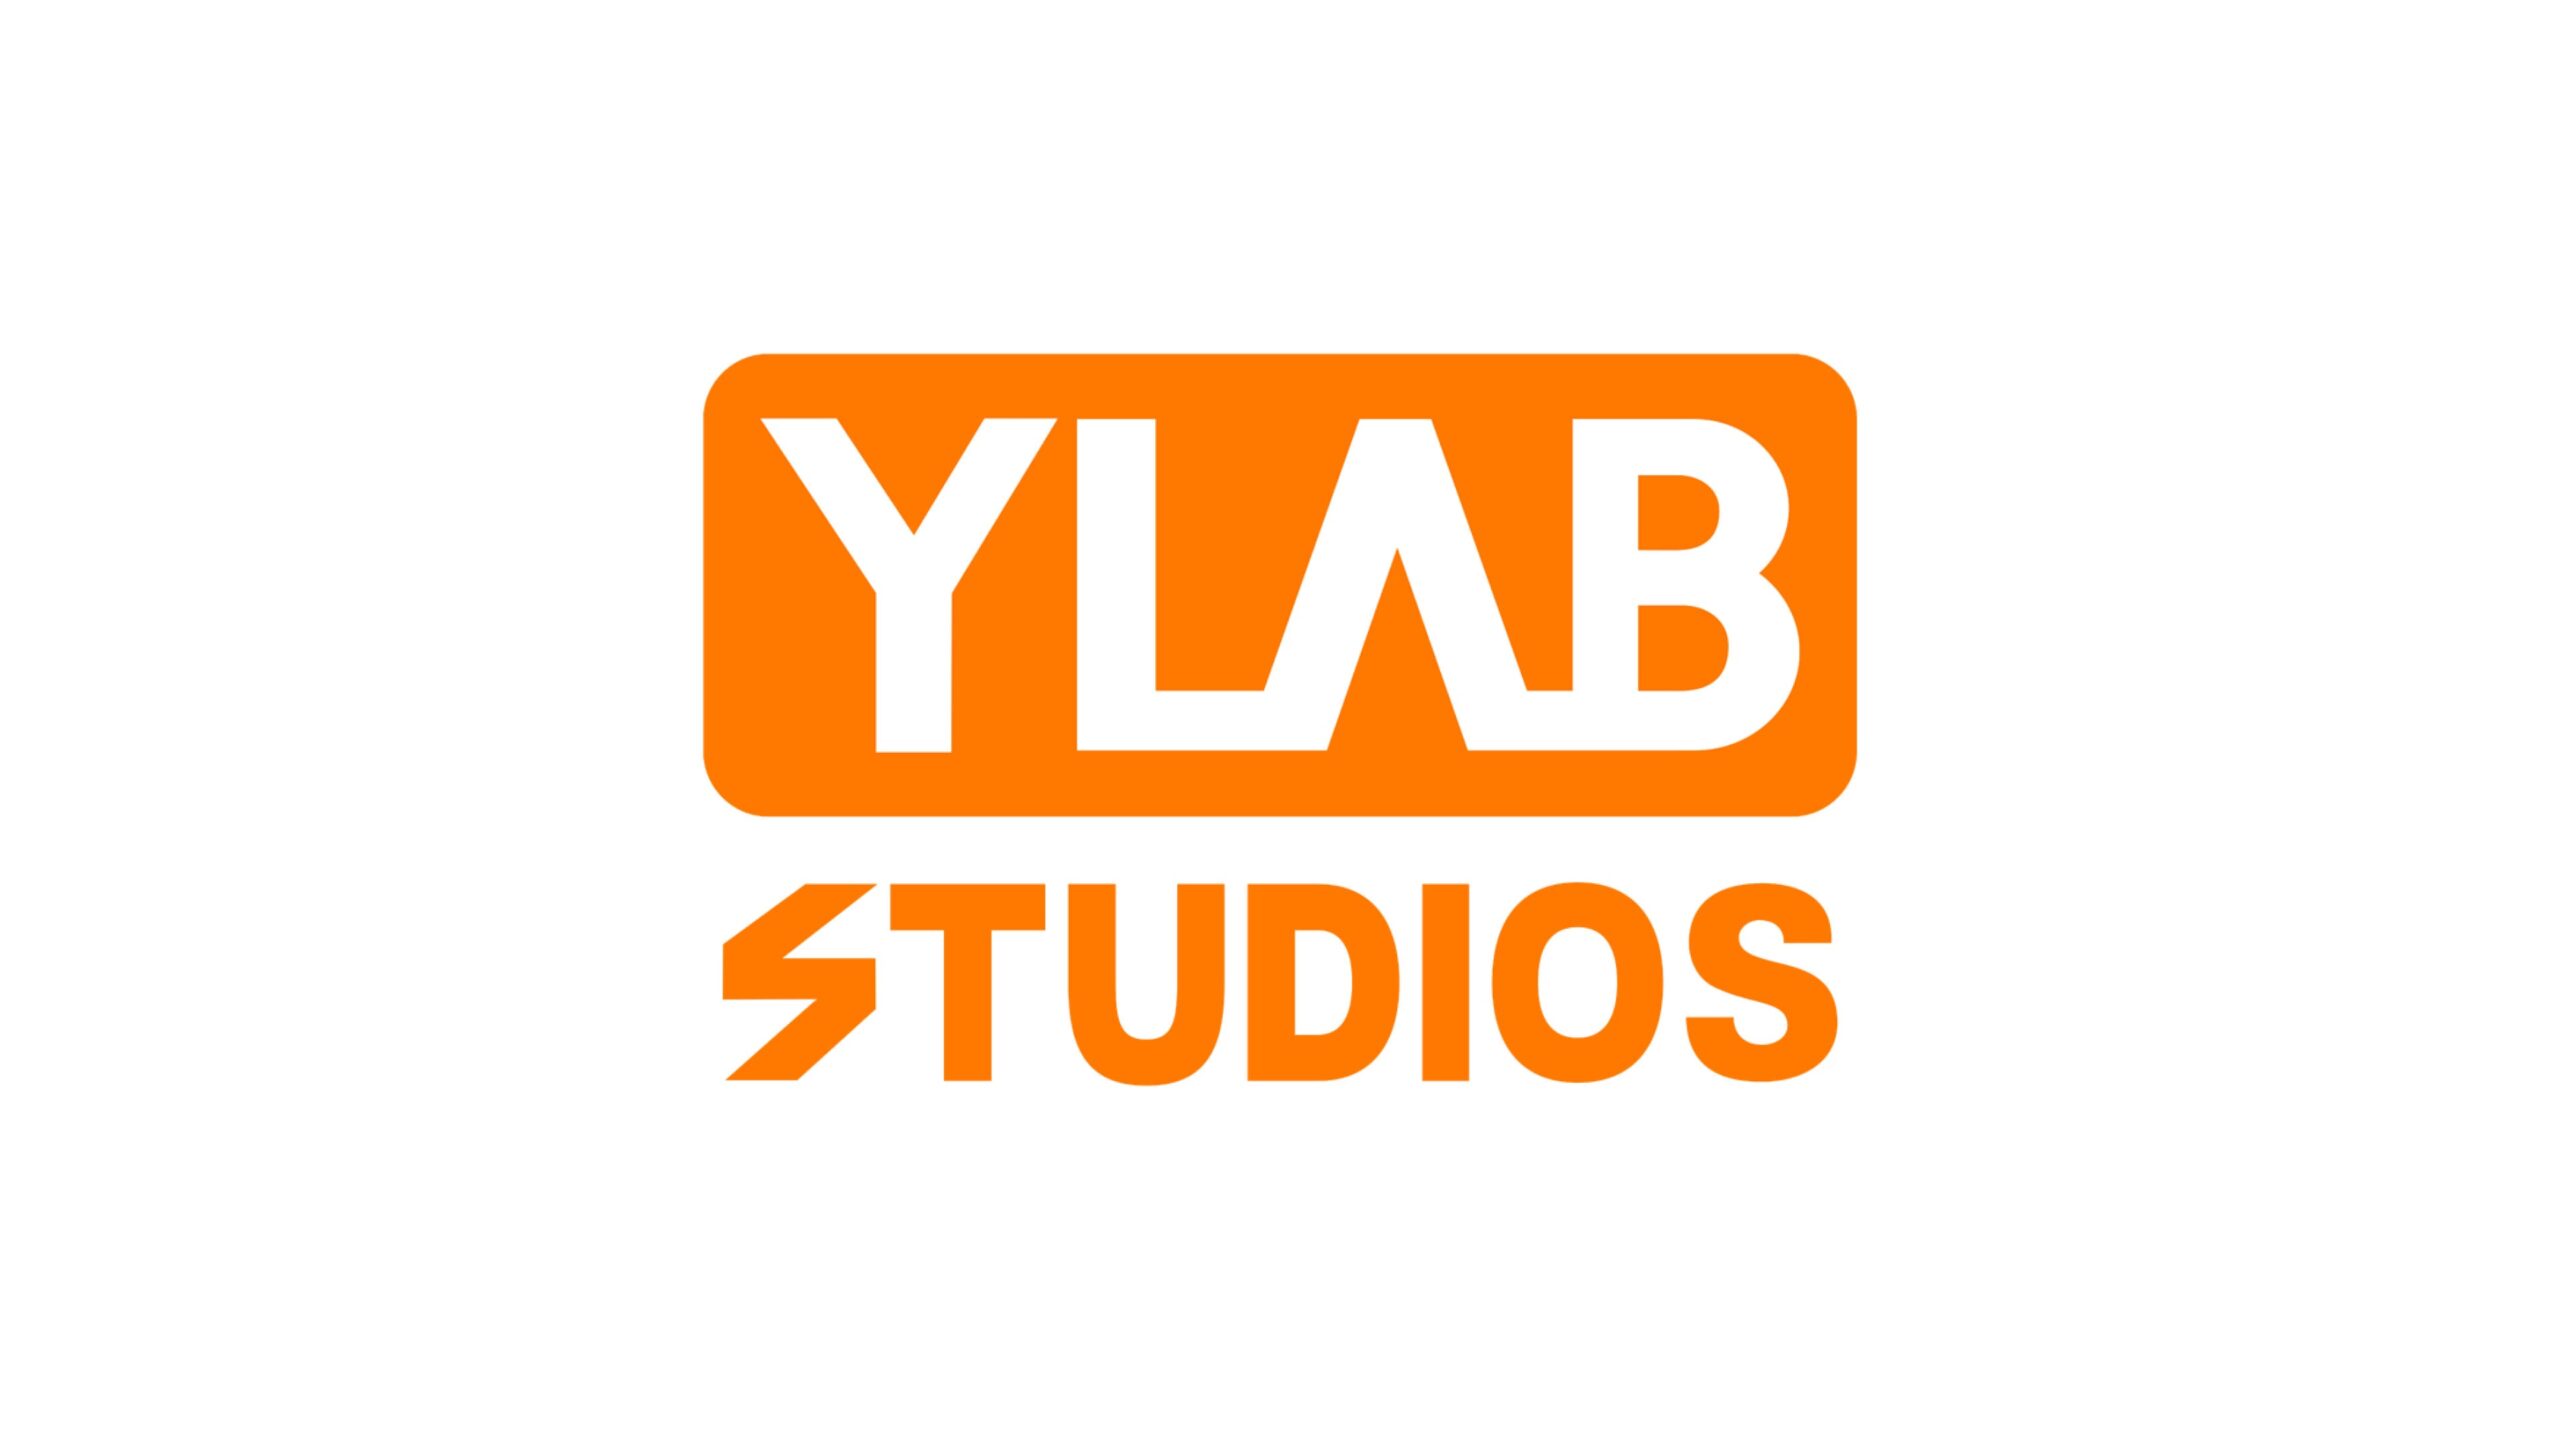 オリジナル漫画・webtoonを制作する株式会社YLAB STUDIOSが15億円の資金調達を実施